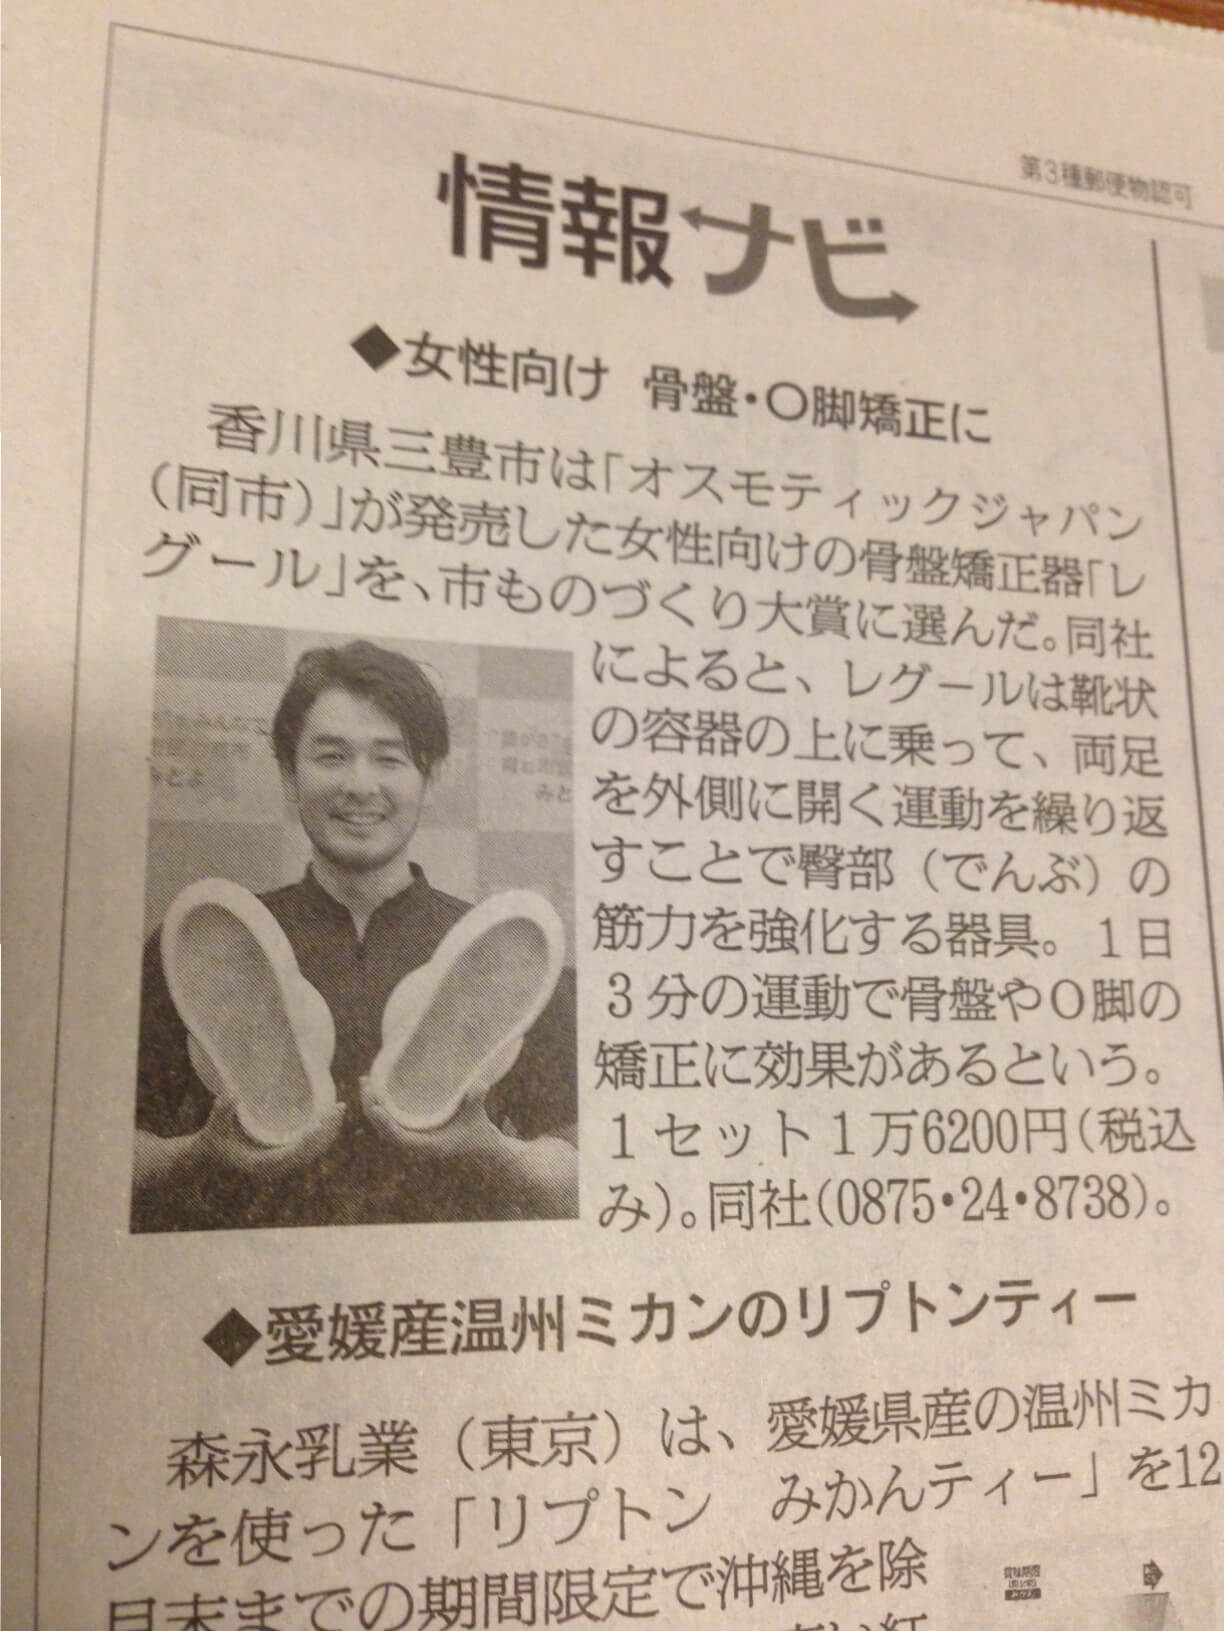 朝日新聞 女性向け　骨盤・Ｏ脚矯正にレグール